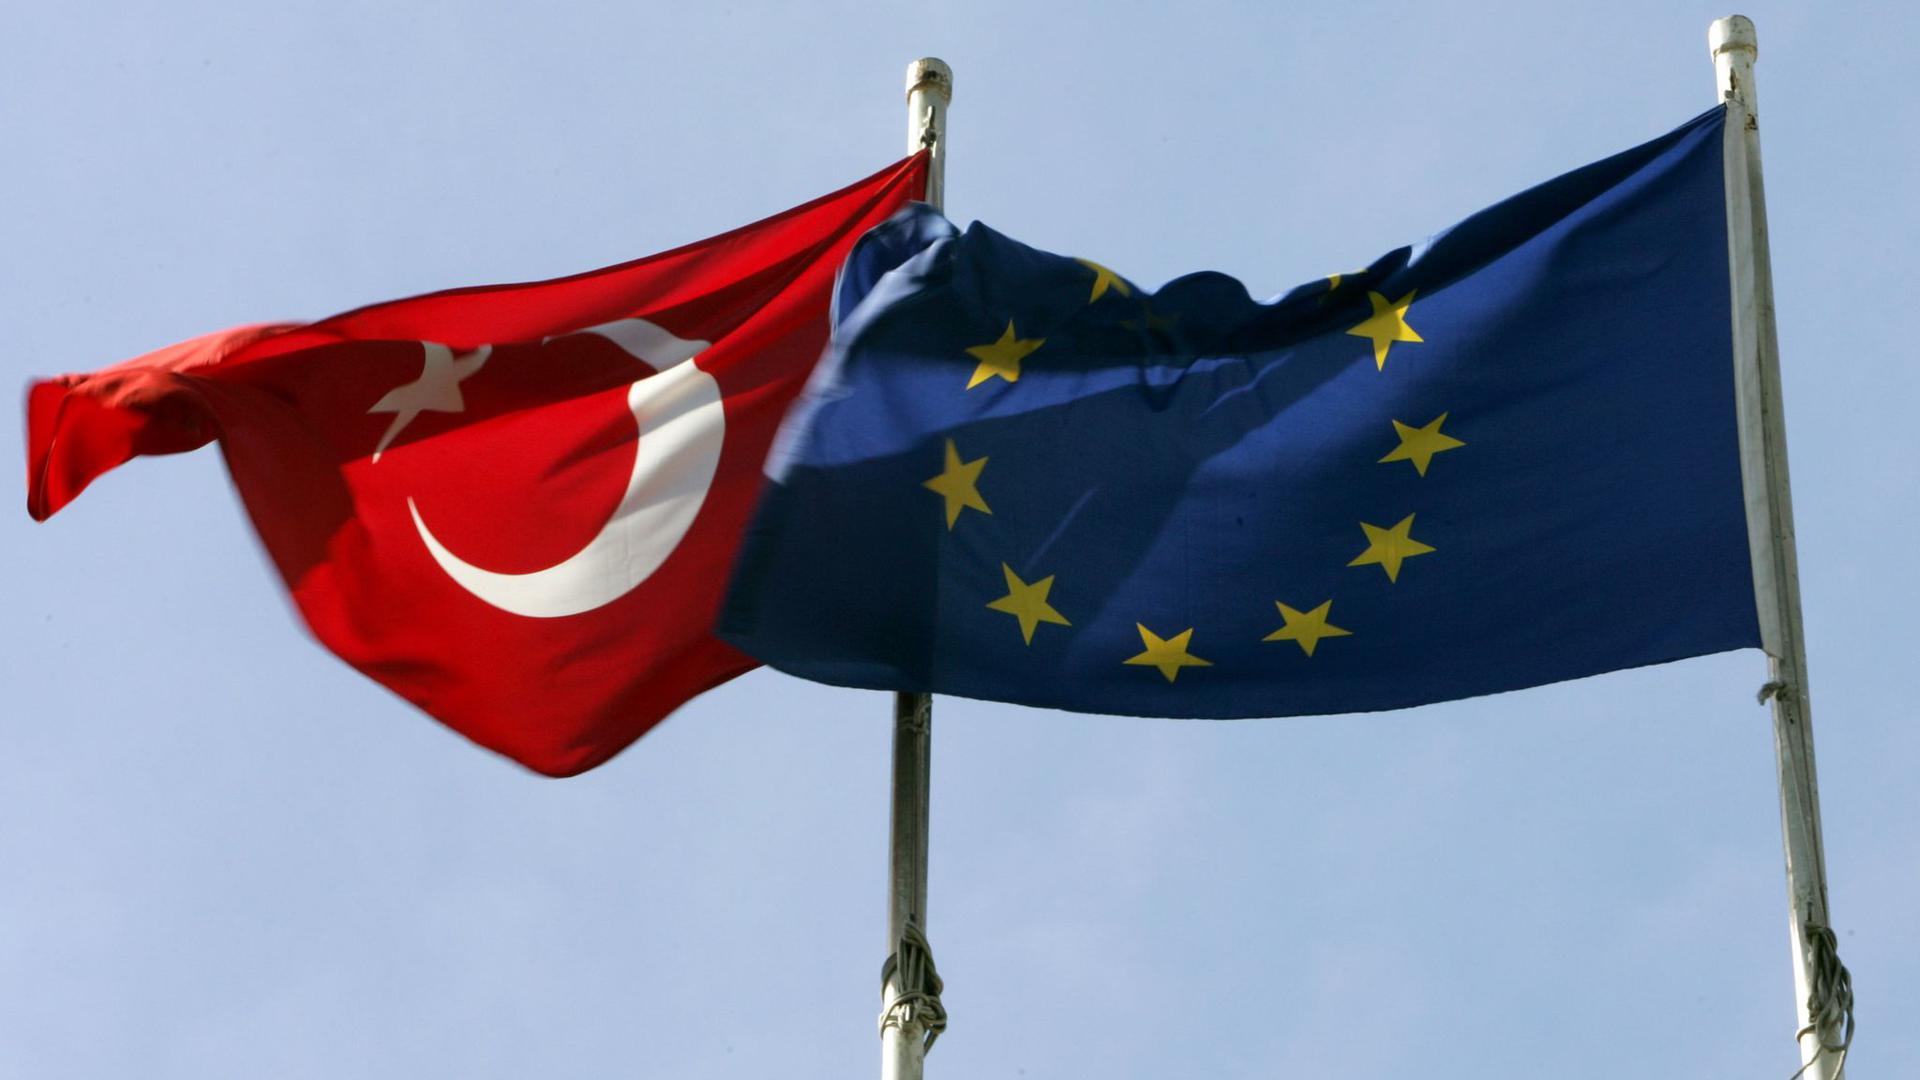 Die türkische und die europäische Flagge.